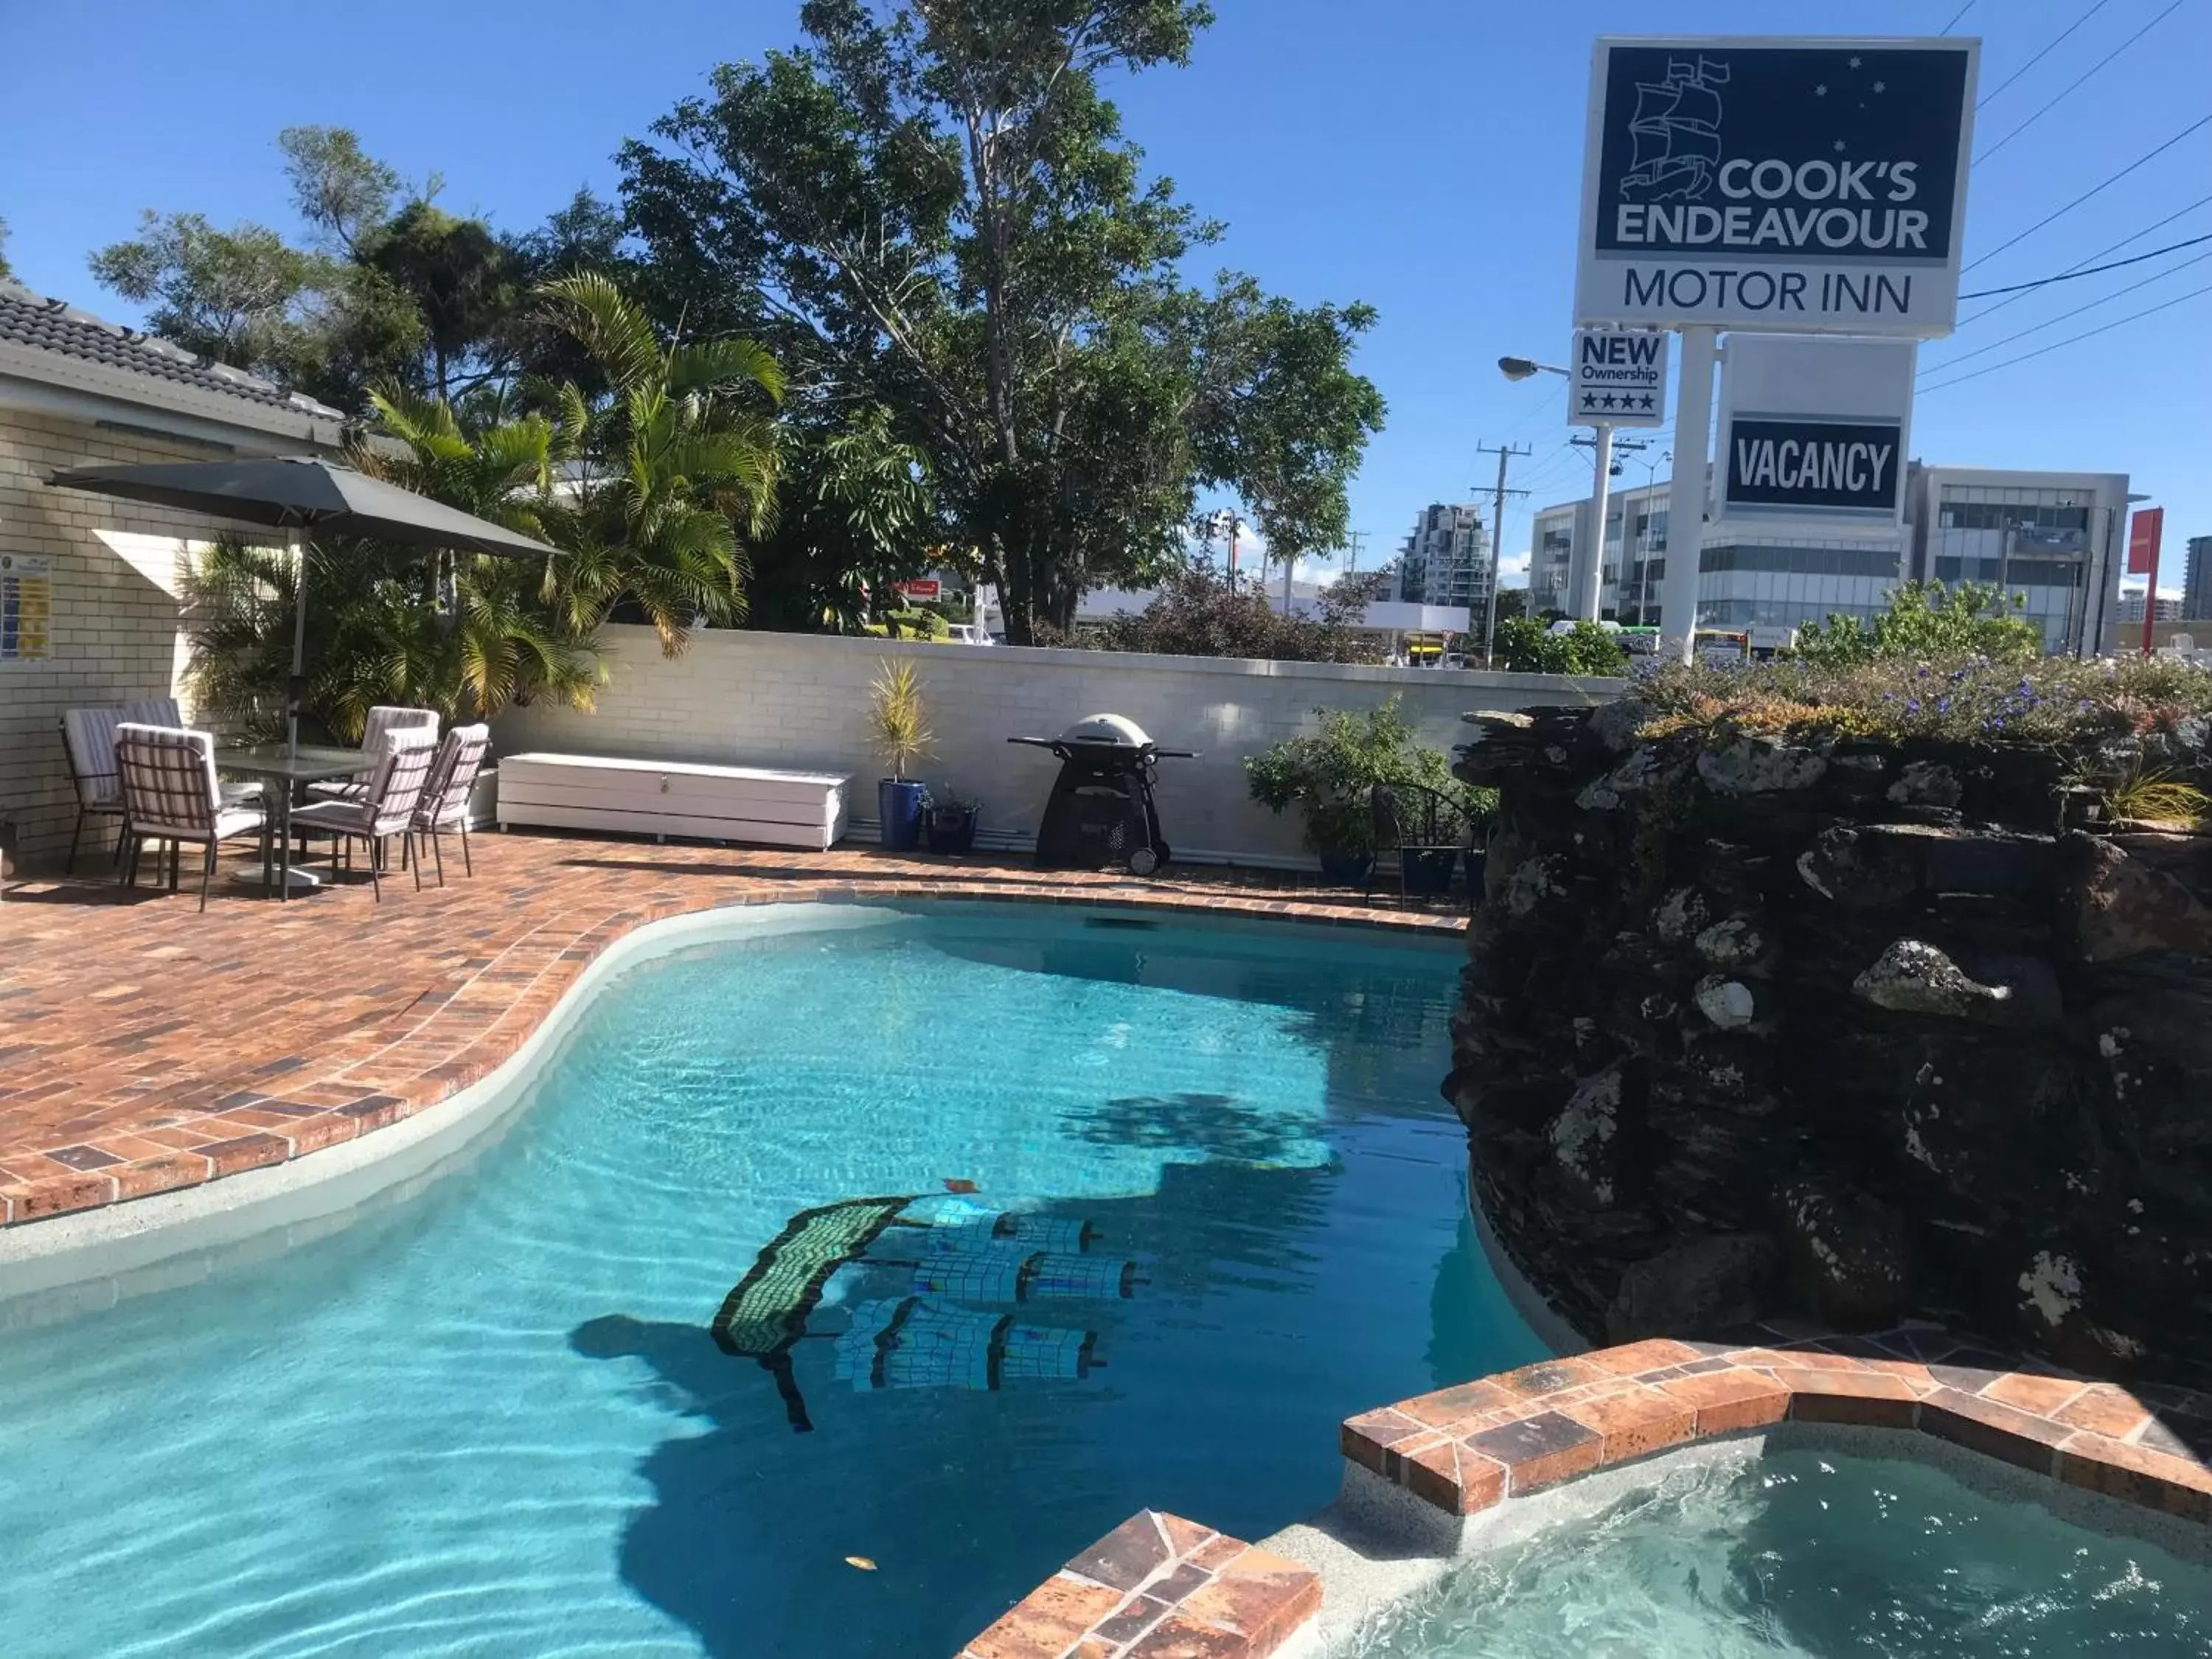 Swimming Pool in Cooks Endeavour Motor Inn